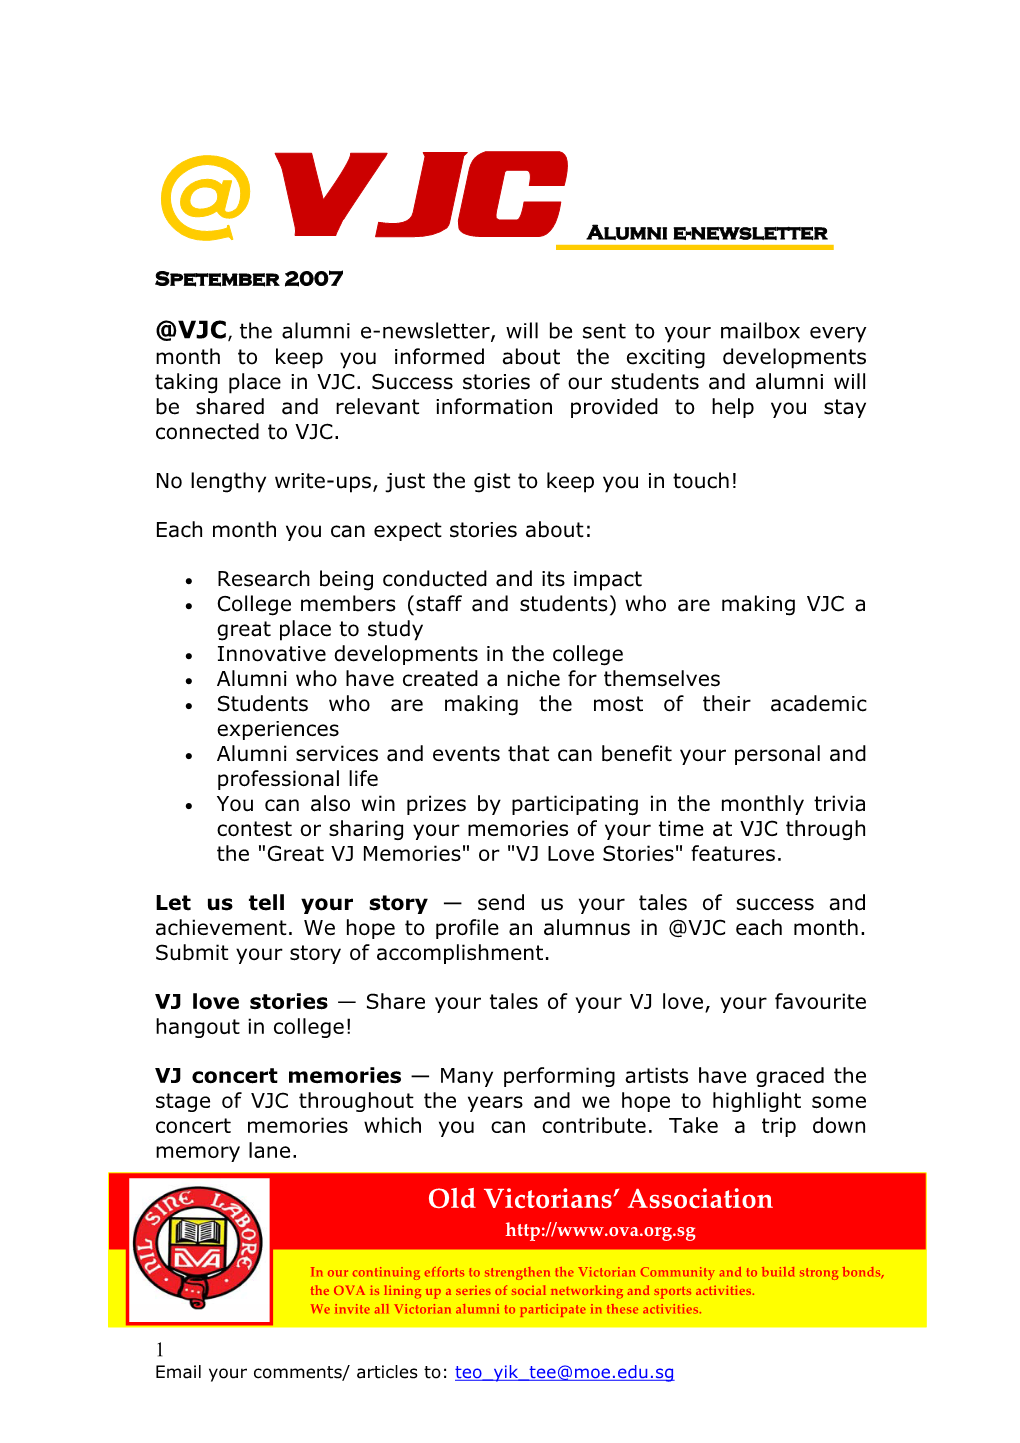 VJC Alumni E-Newsletter Spetember 2007